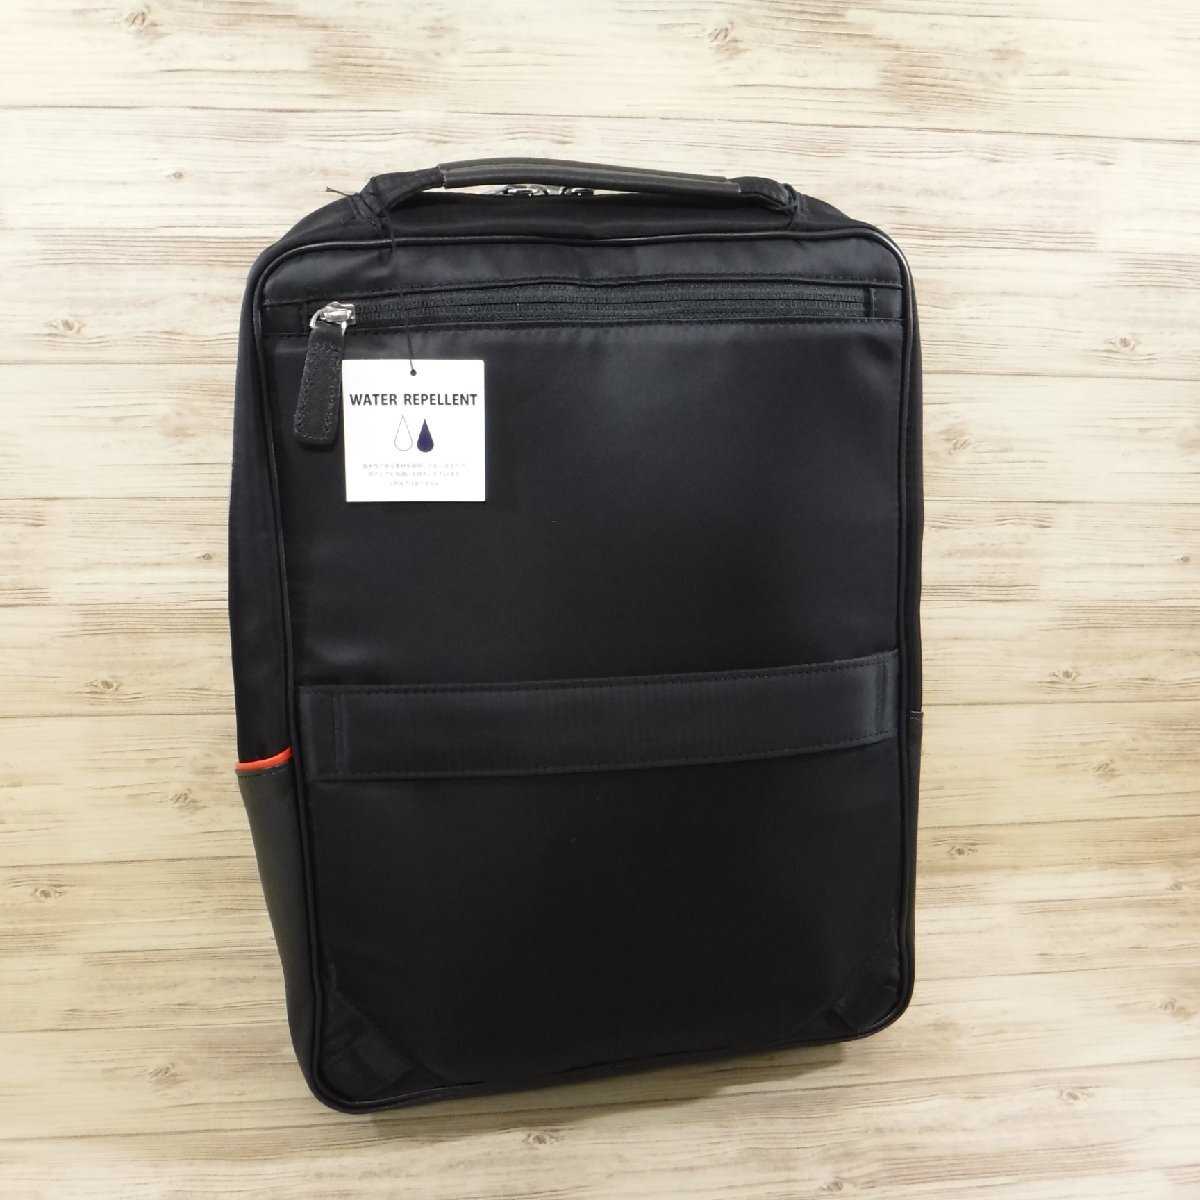 BB983izito обычная цена 25300 иен новый товар чёрный 2WAY кожа деловой рюкзак водоотталкивающий A4 размер выставить соответствует PC место хранения IS/ITsafi-ru937701